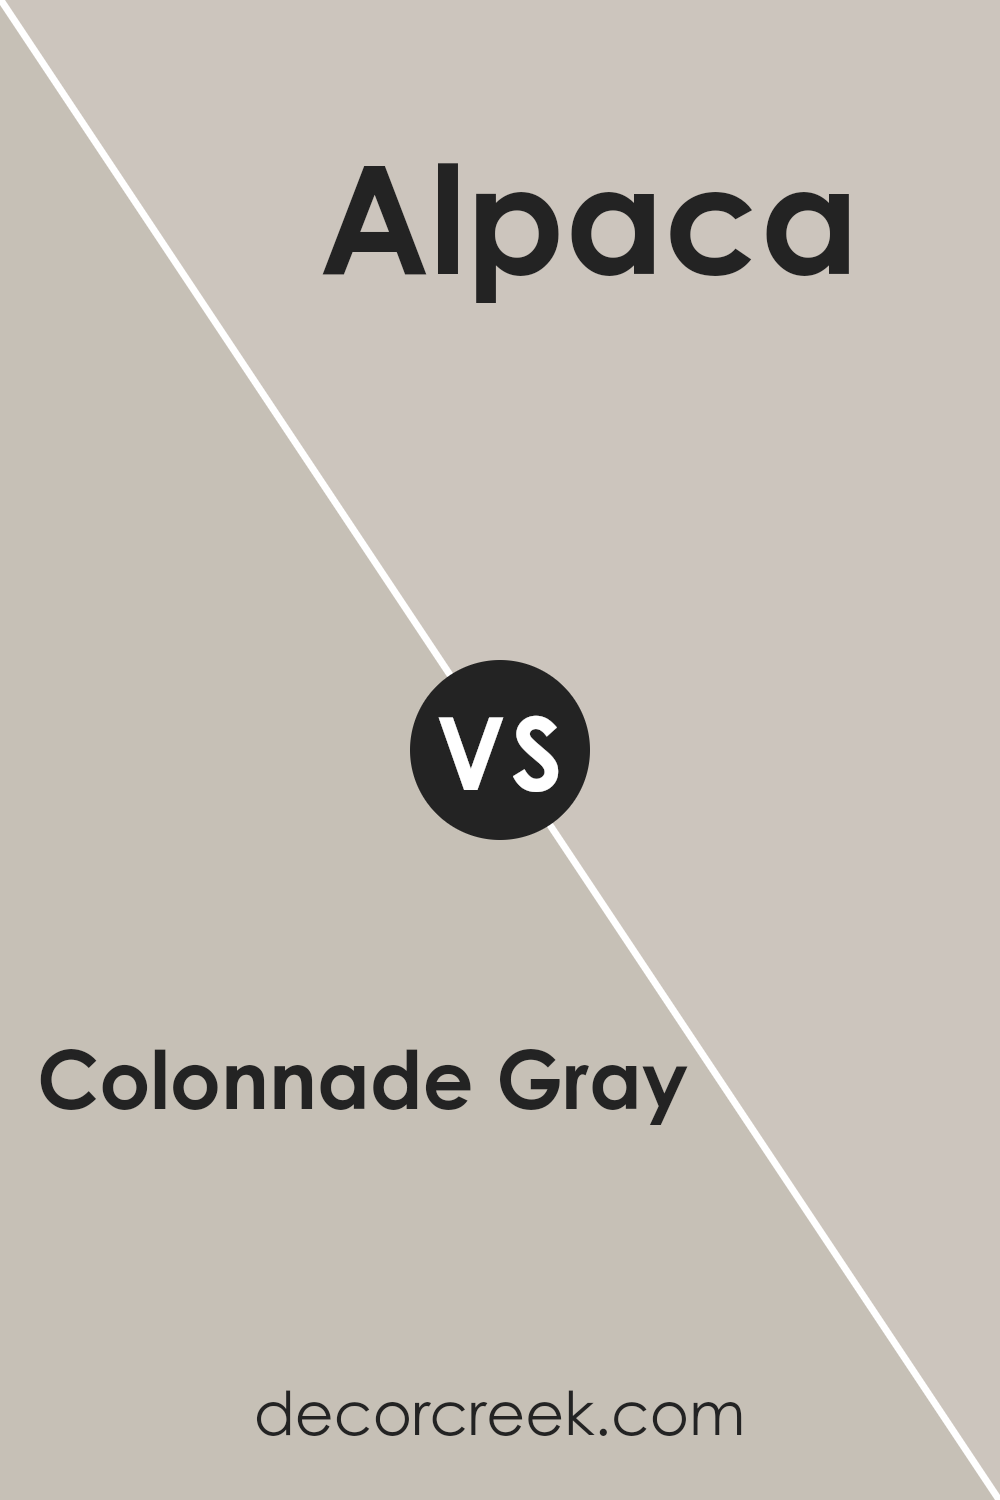 colonnade_gray_sw_7641_vs_alpaca_sw_7022